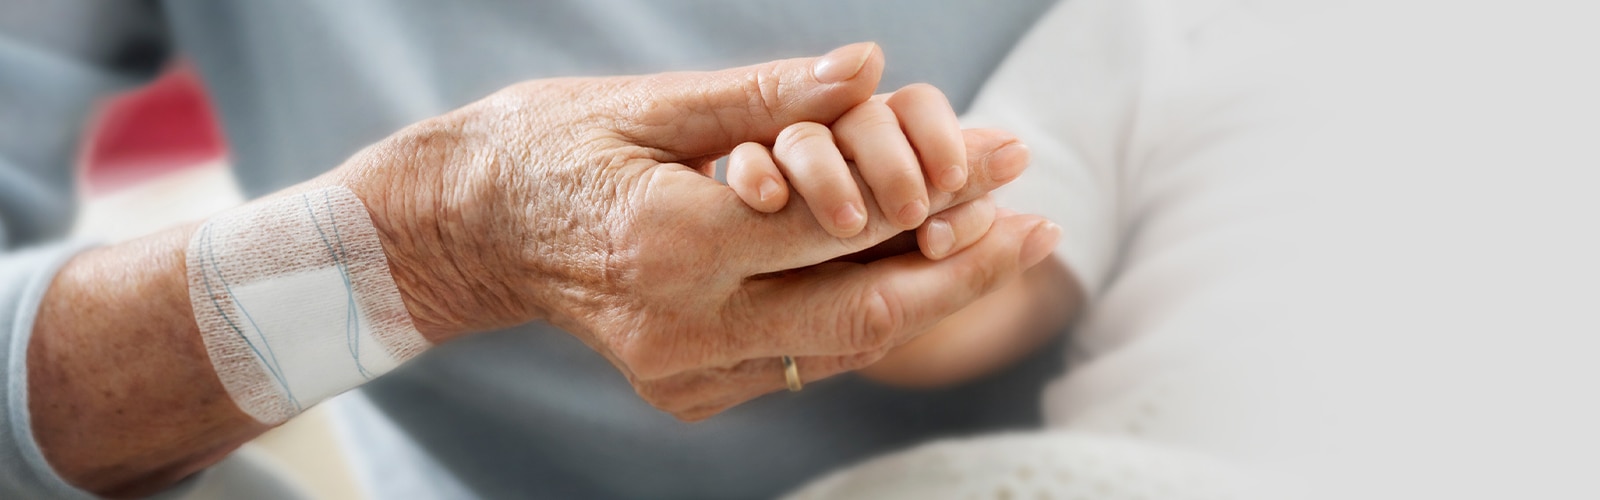 Een oudere vrouw met een wondpleister op haar rechterarm houdt de hand van een baby vast.  